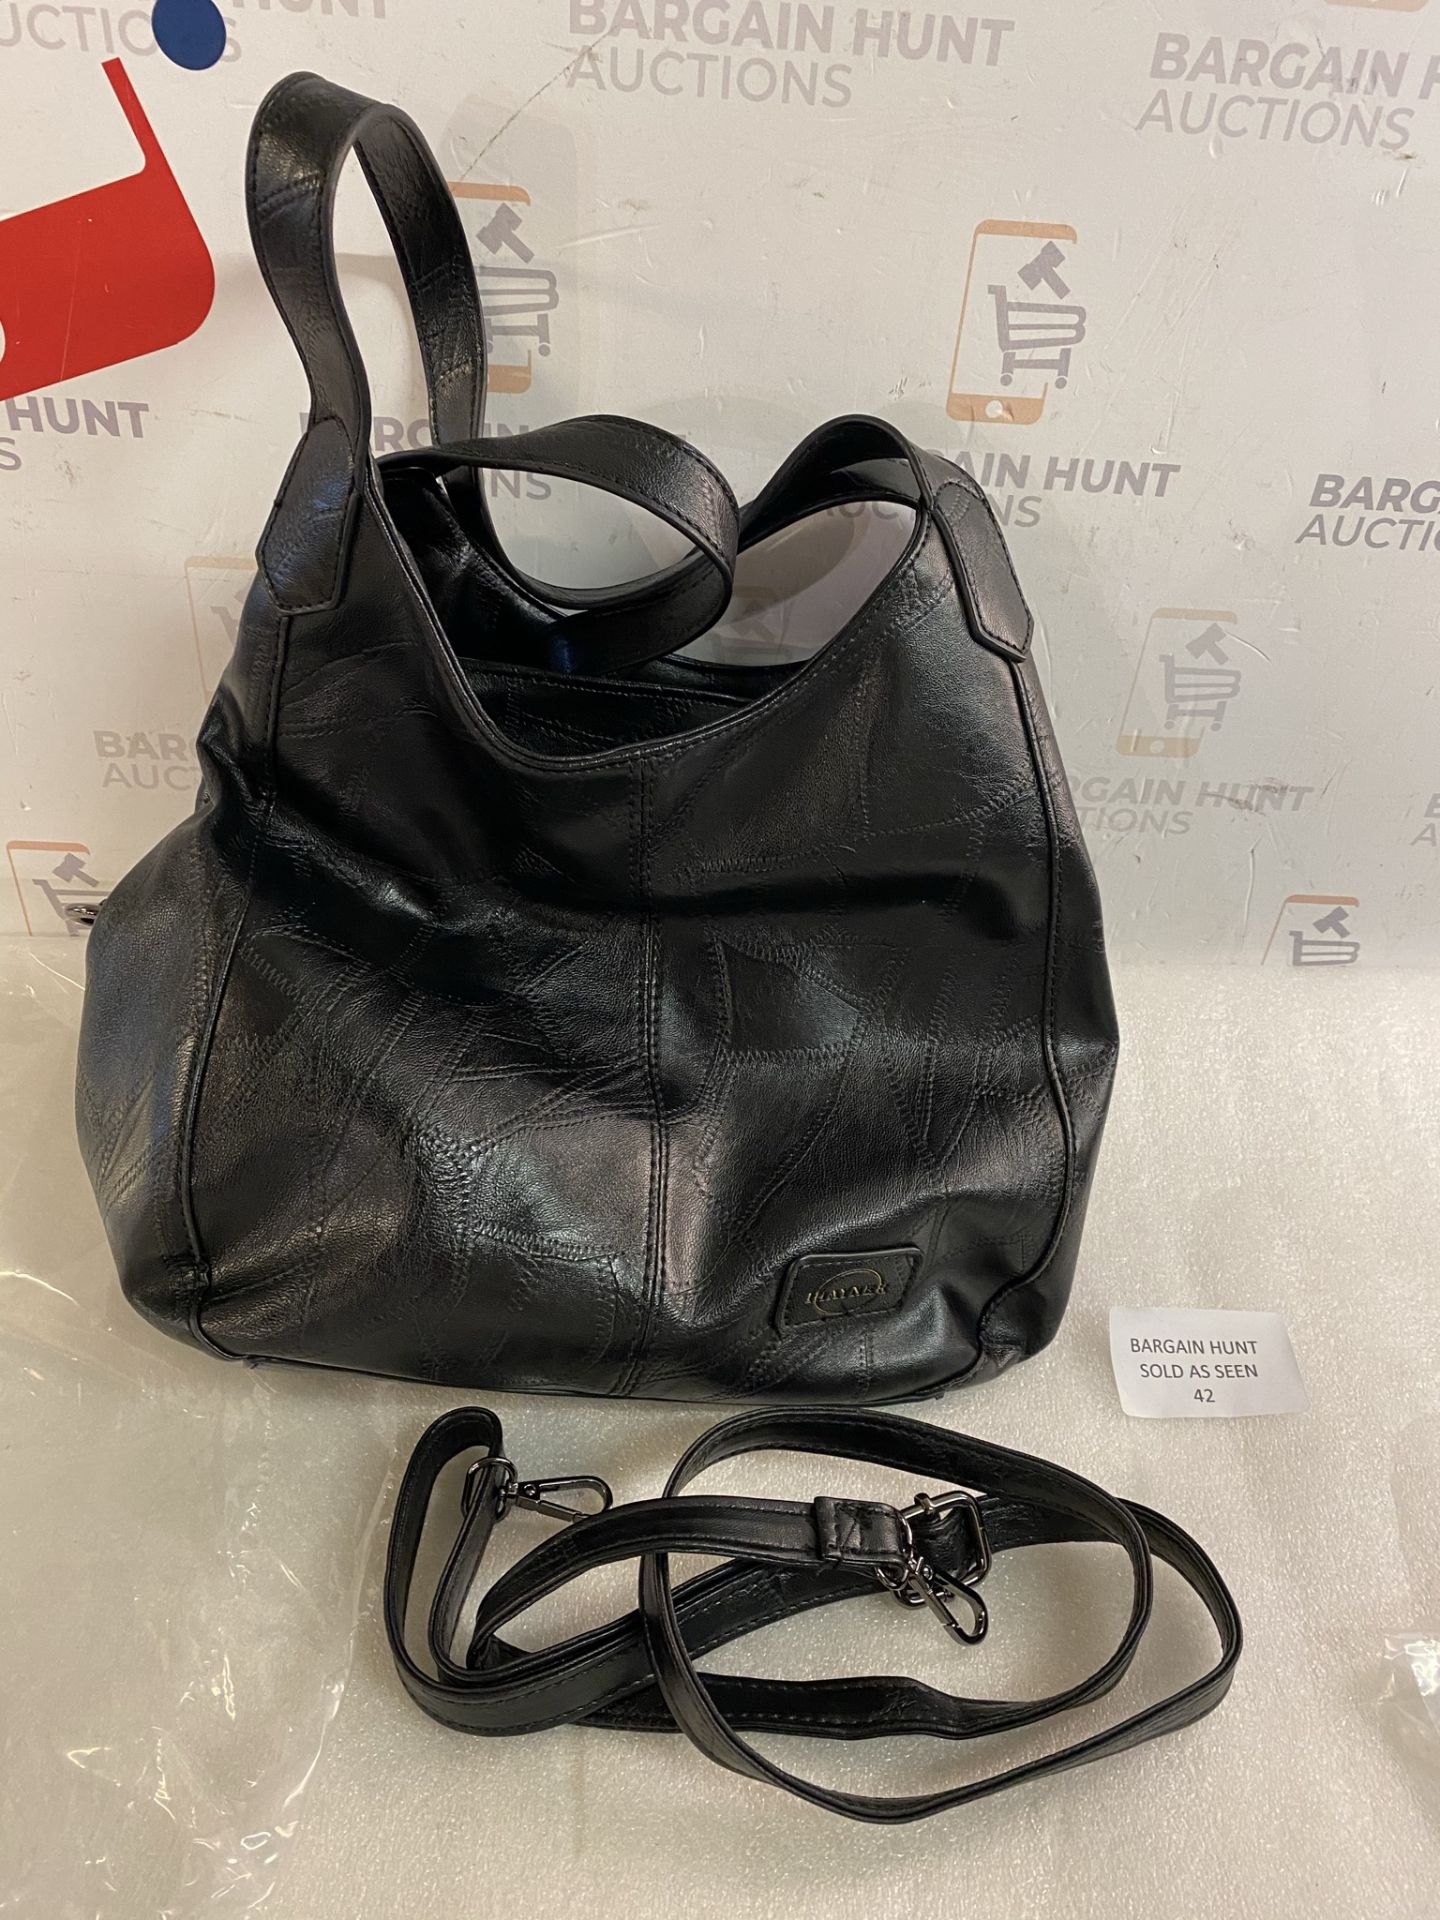 I IHAYNER Soft Vegan Leather Bag Large Capacity Handbag